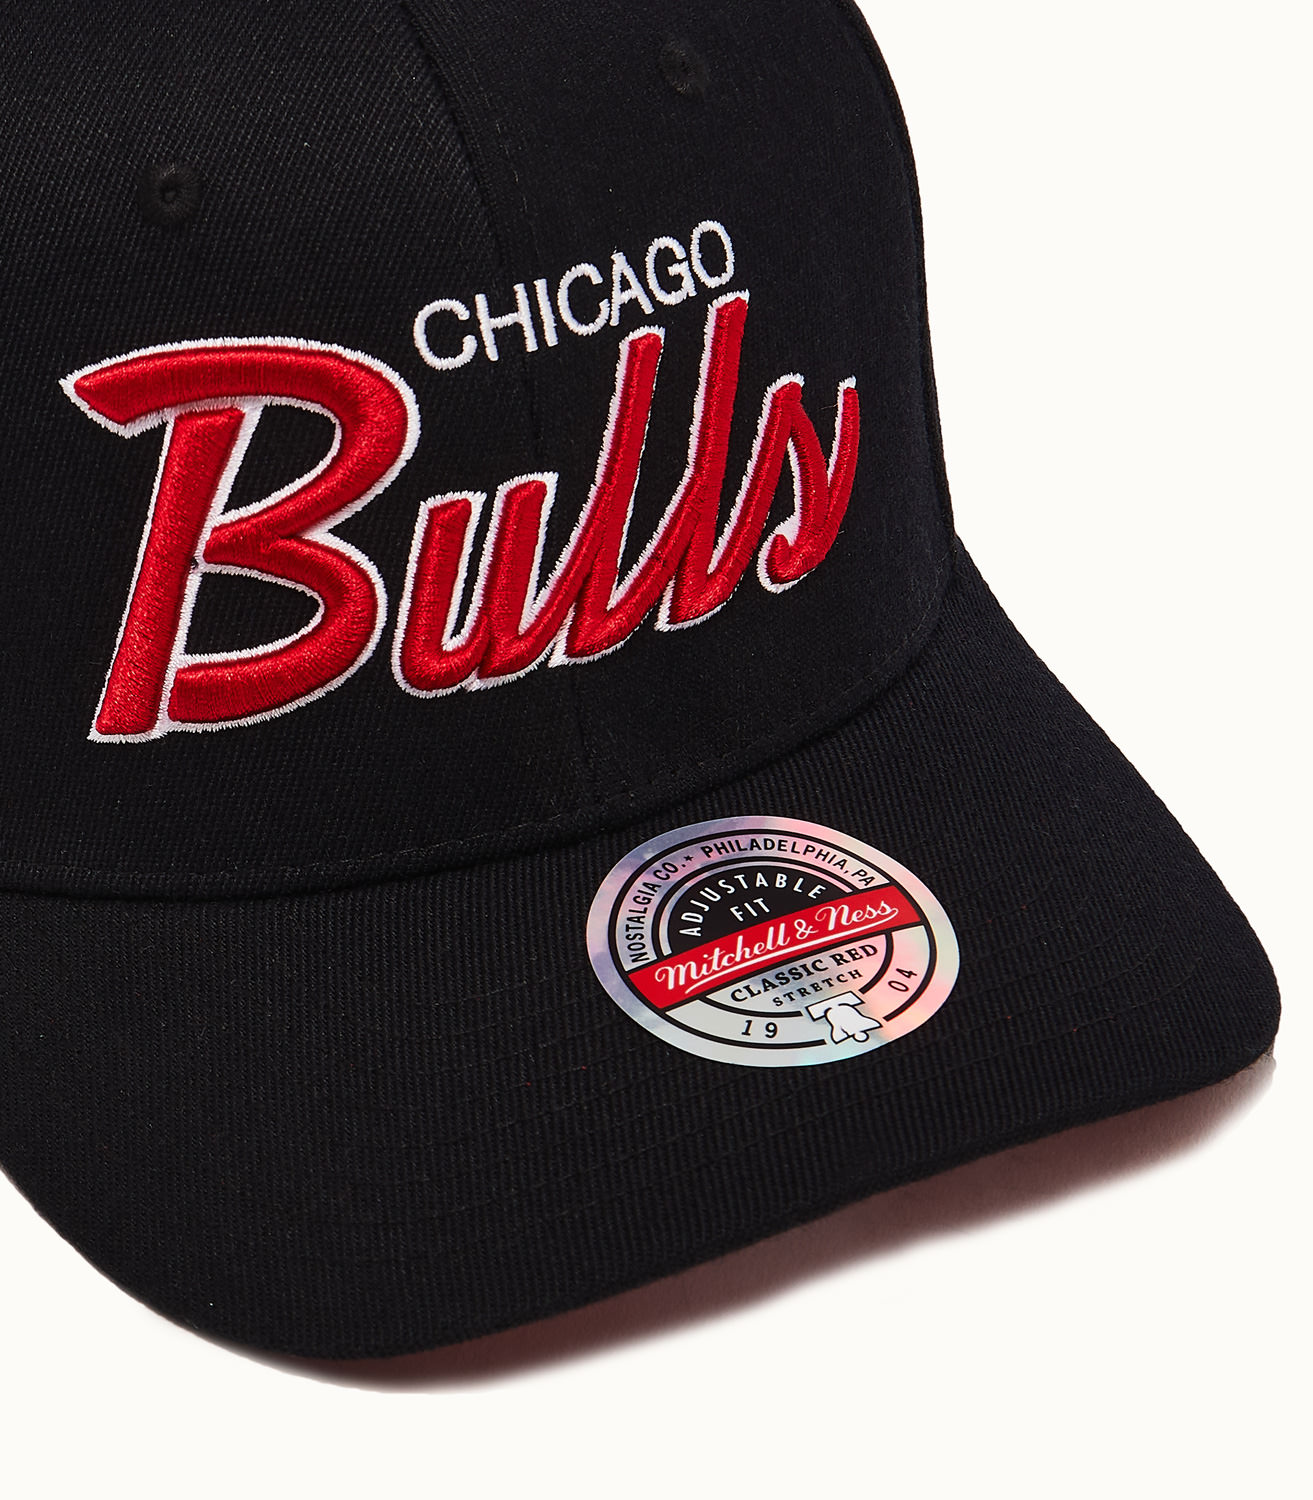 VTG 2 Chicago Bulls SNAP BACK HAT Sports Specialties B